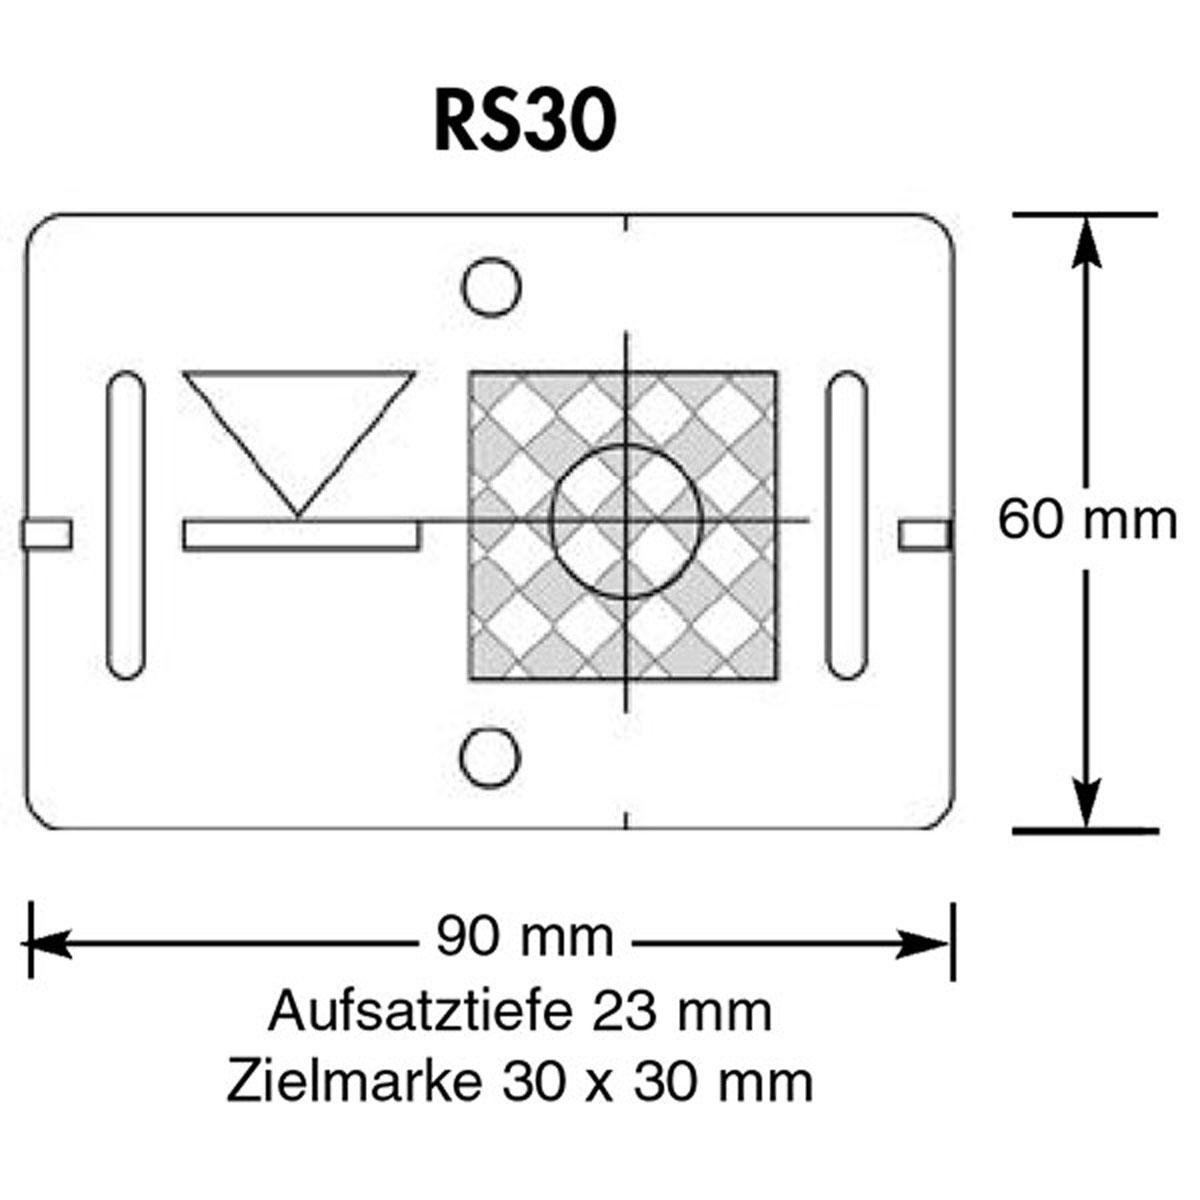 BIM Vermessungs-Plaketten RS 30, grau, mit reflektierender Zielmarke